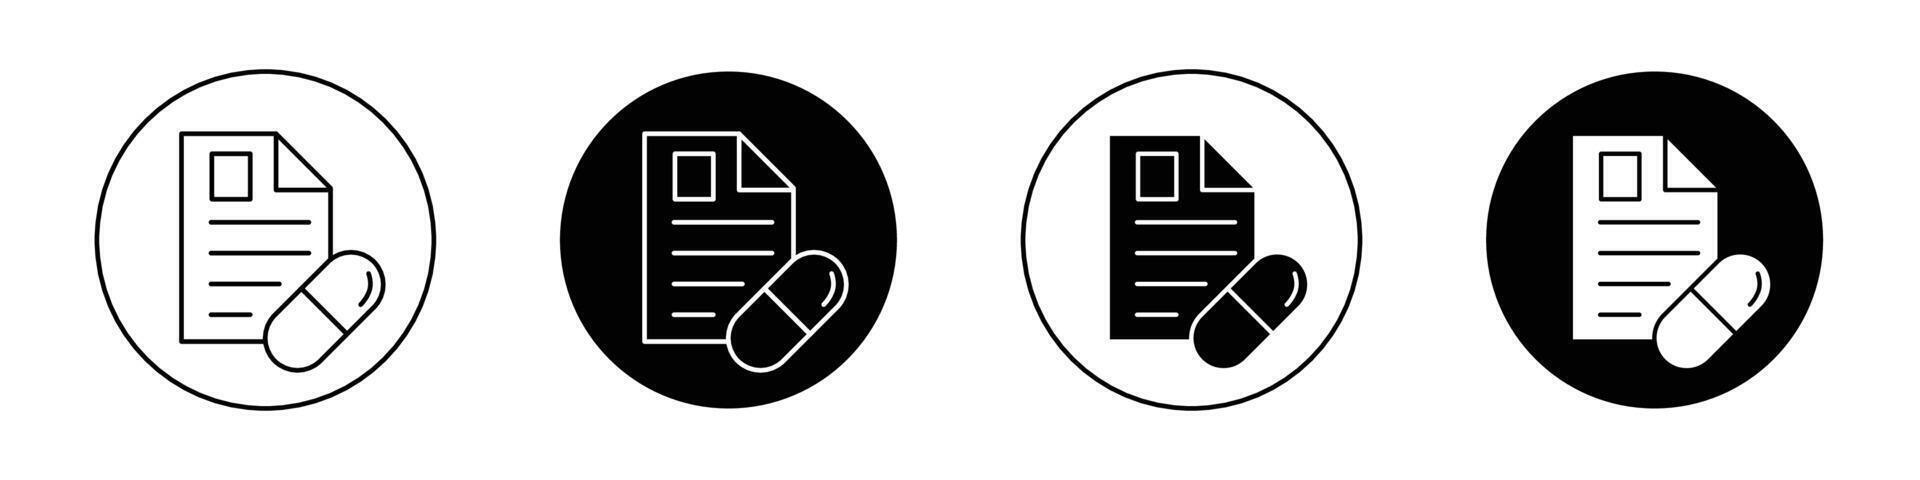 Prescription and capsule icon vector